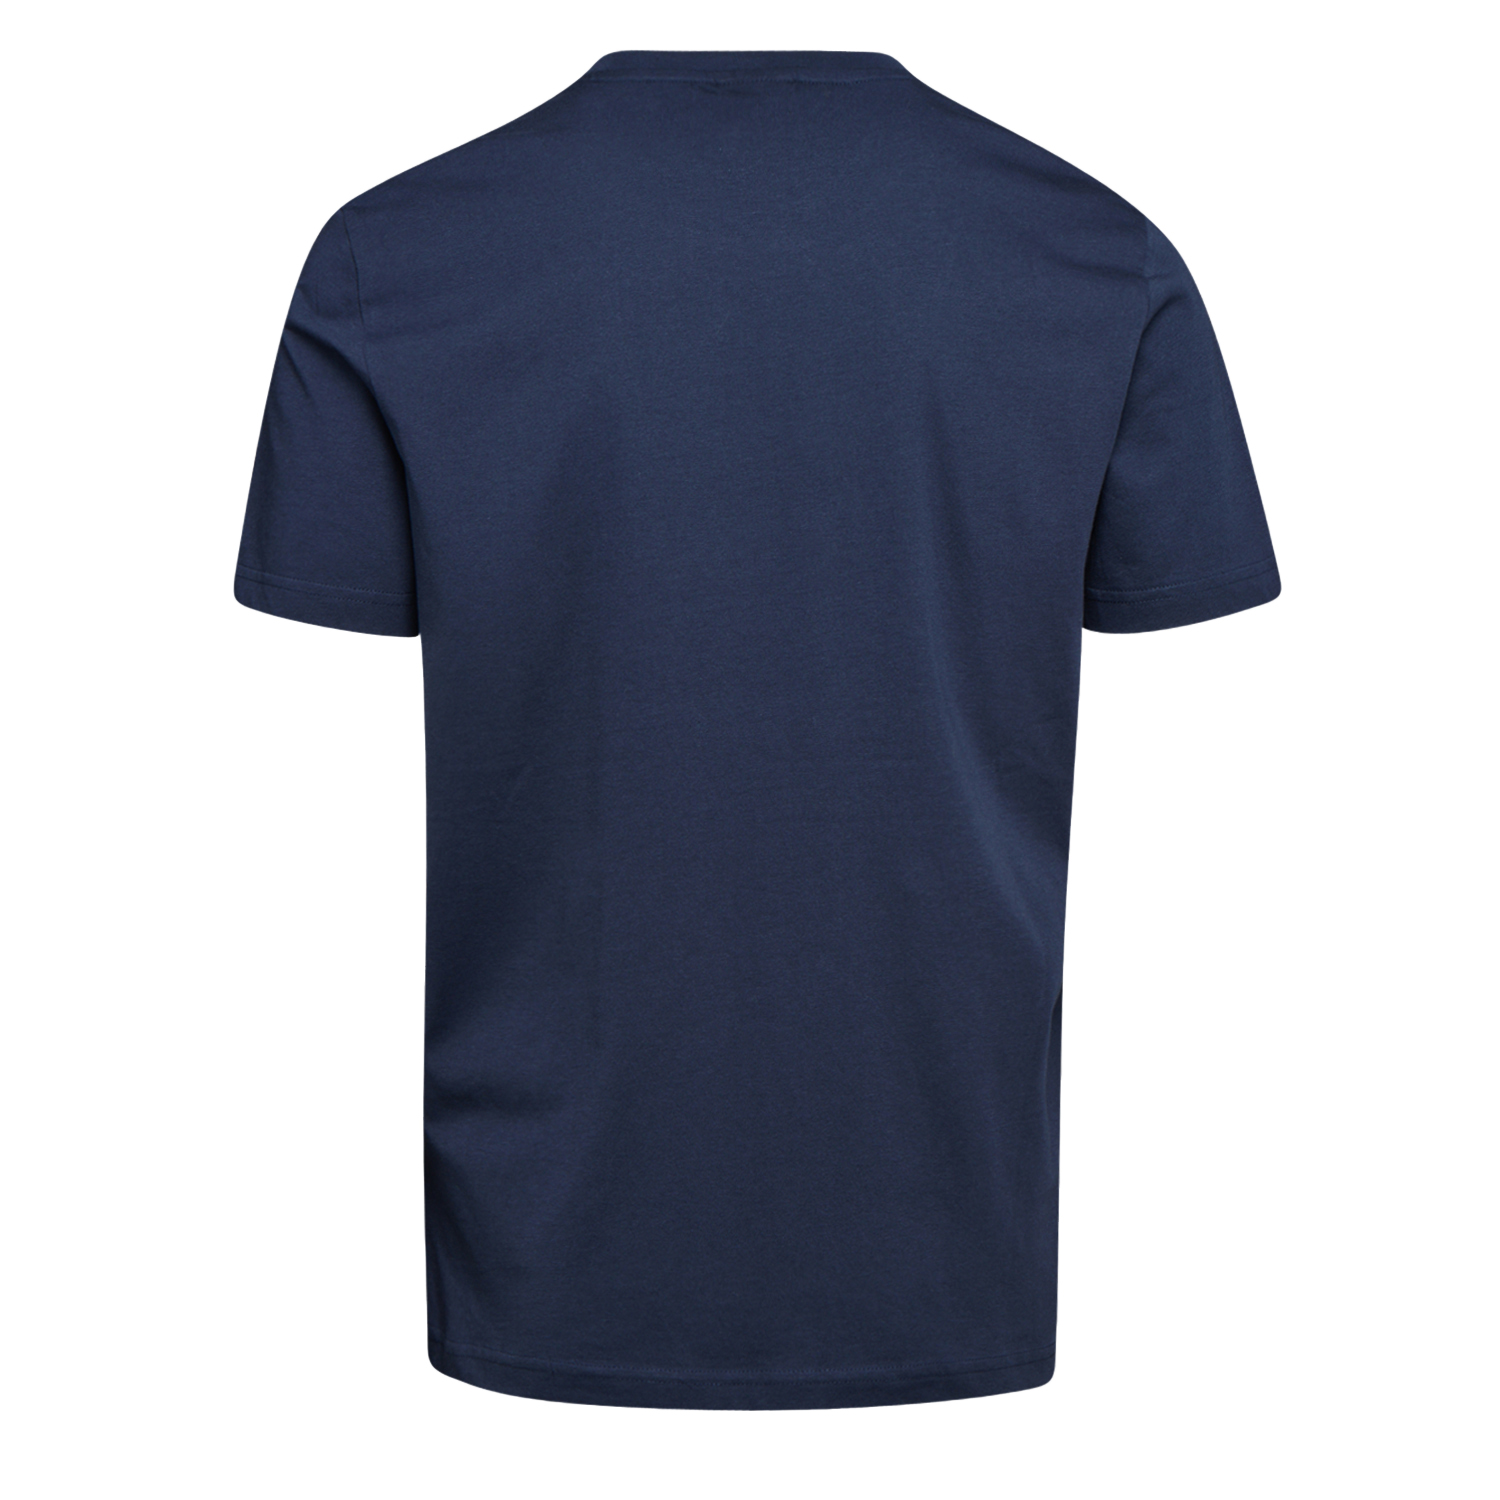 Tee-shirt de travail GRAPHIC ORGANIC à manches courtes bleu marine T2XL - DIADORA SPA - 702.176914